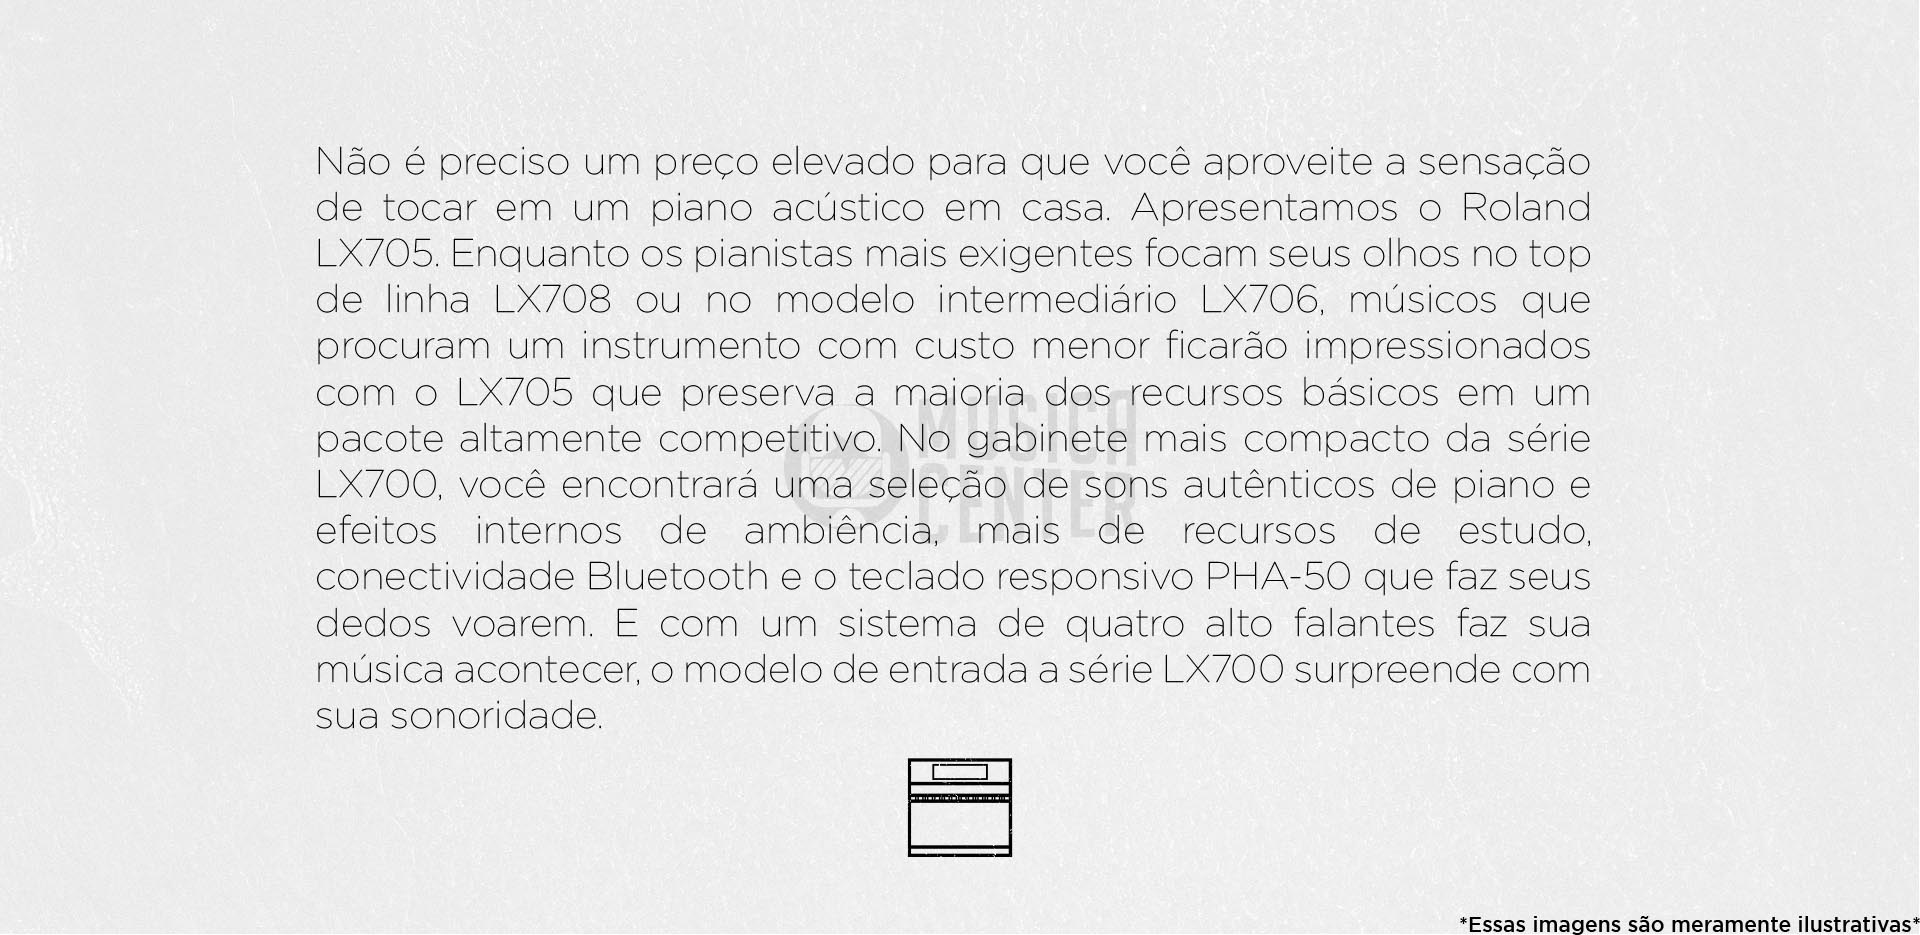 Descrição do Piano Vertical Premium Roland LX705